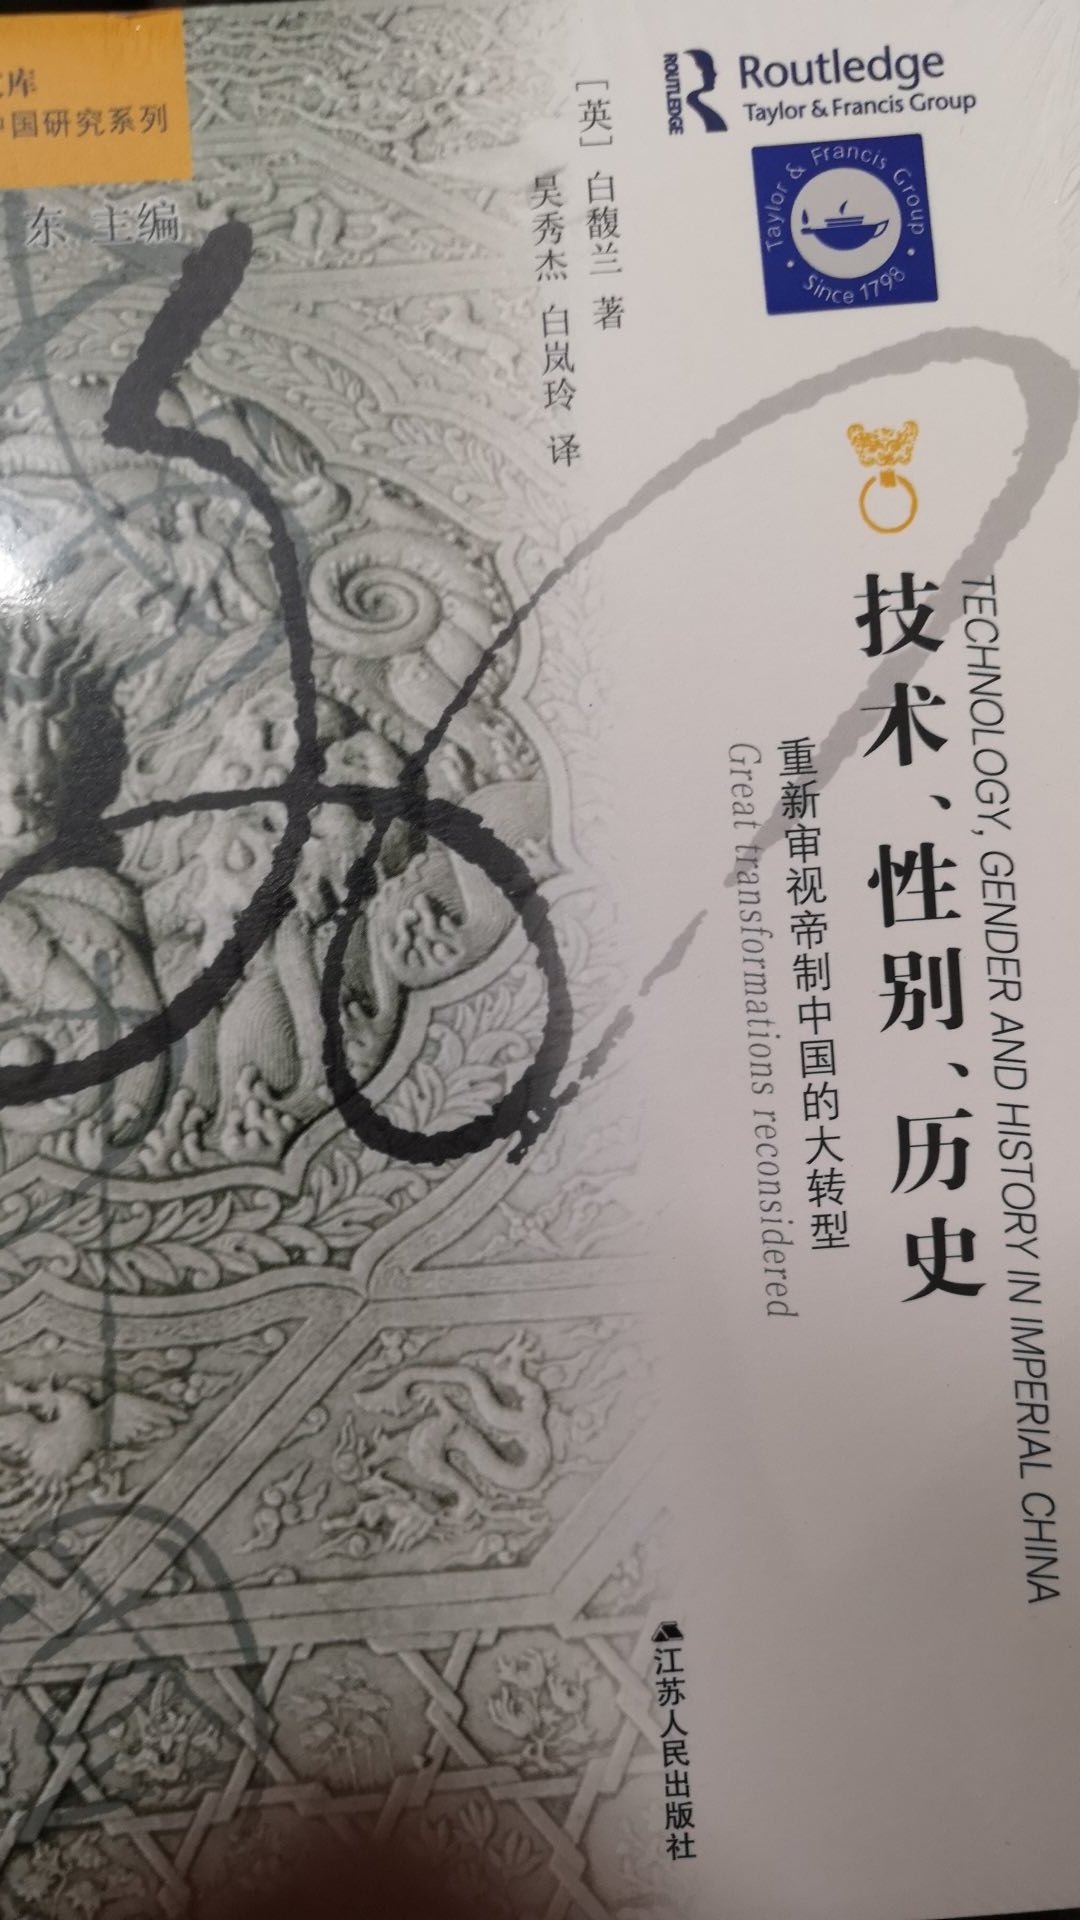 宝贝收到了，海外中国研究系列，特别好的一套书，买了好多本呢，一定要好好拜读。嘻嘻。哈哈哈哈?